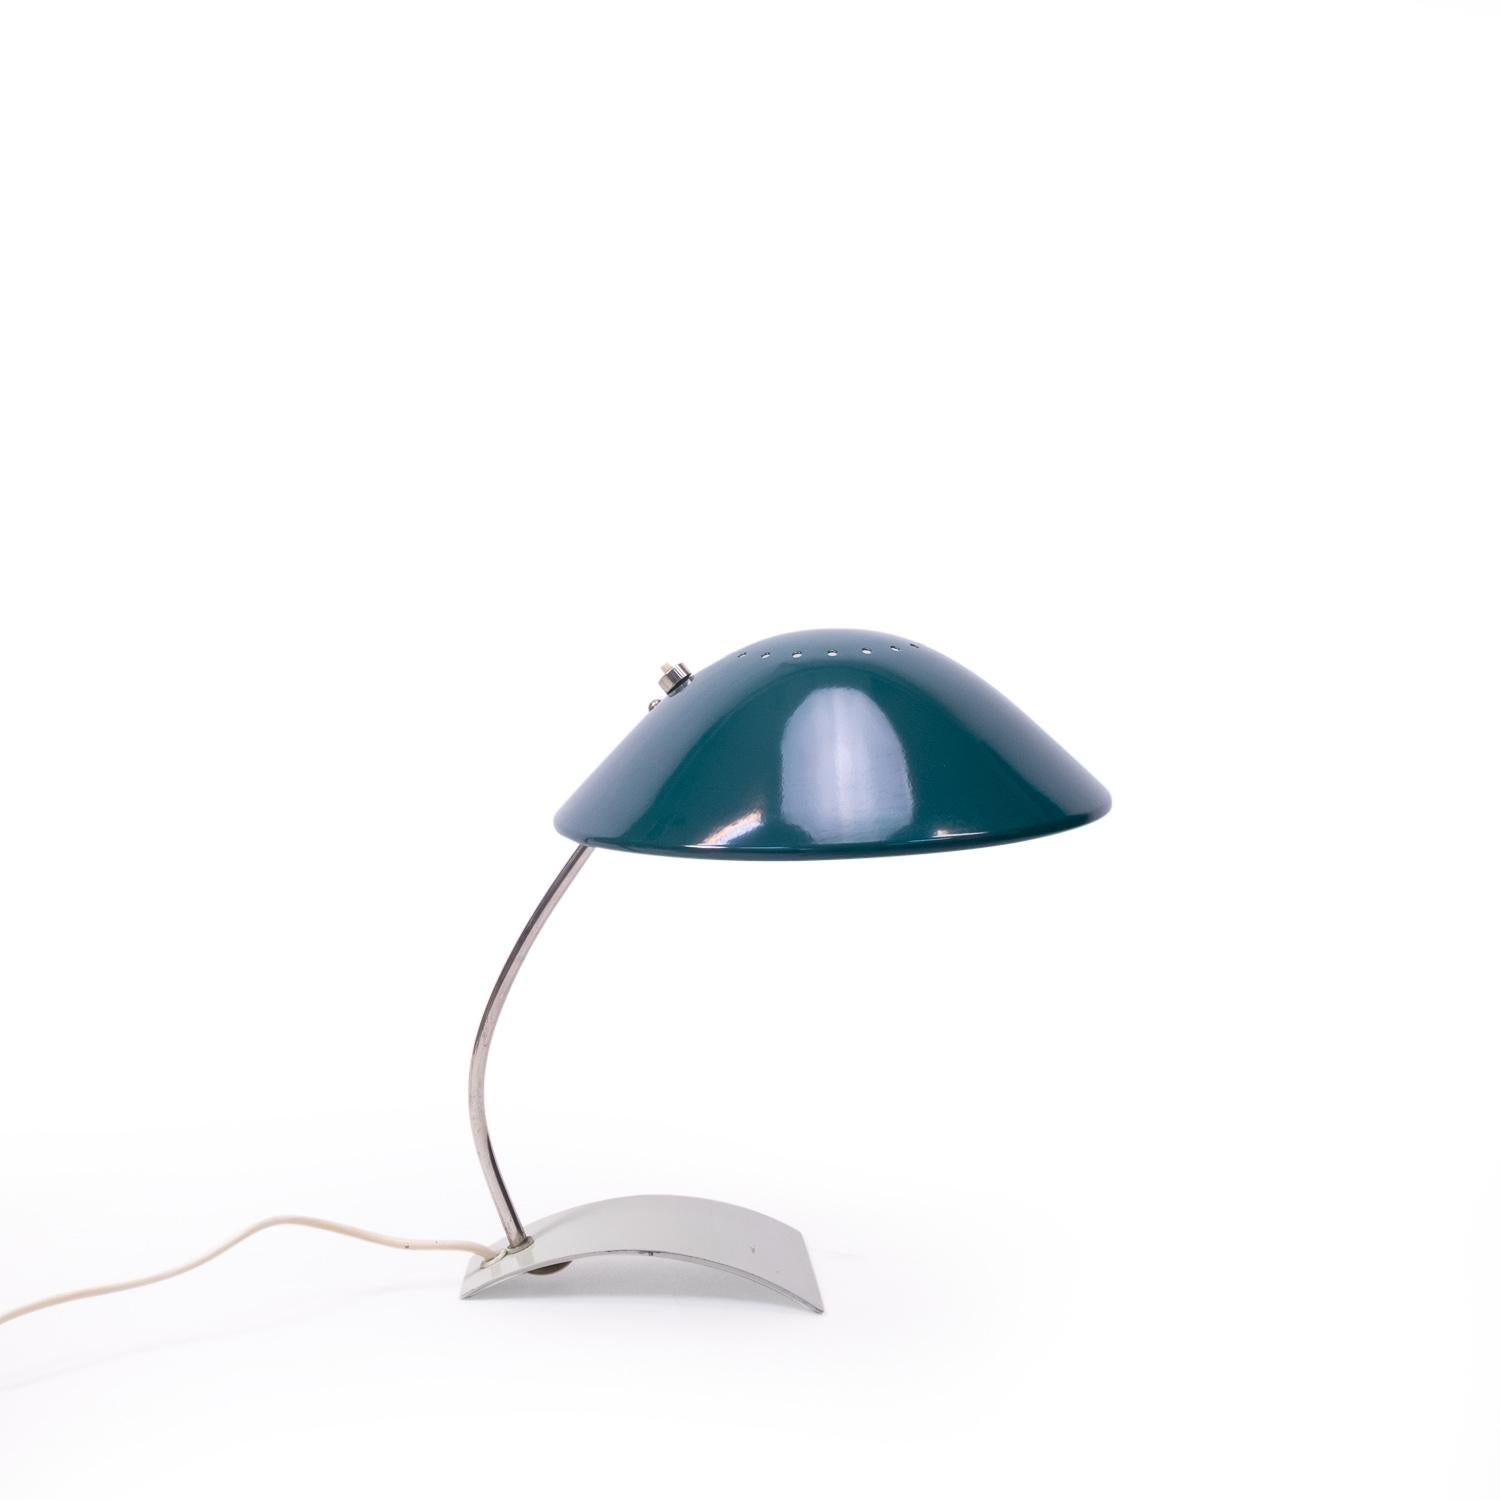 Lampe de bureau ou de table de Christian Dell (modèle 6840), qui a conçu cette lampe au début des années 1930 (période du Bauhaus), et dont la production s'est poursuivie jusque dans les années 1970.

Elle comporte un abat-jour en aluminium et une